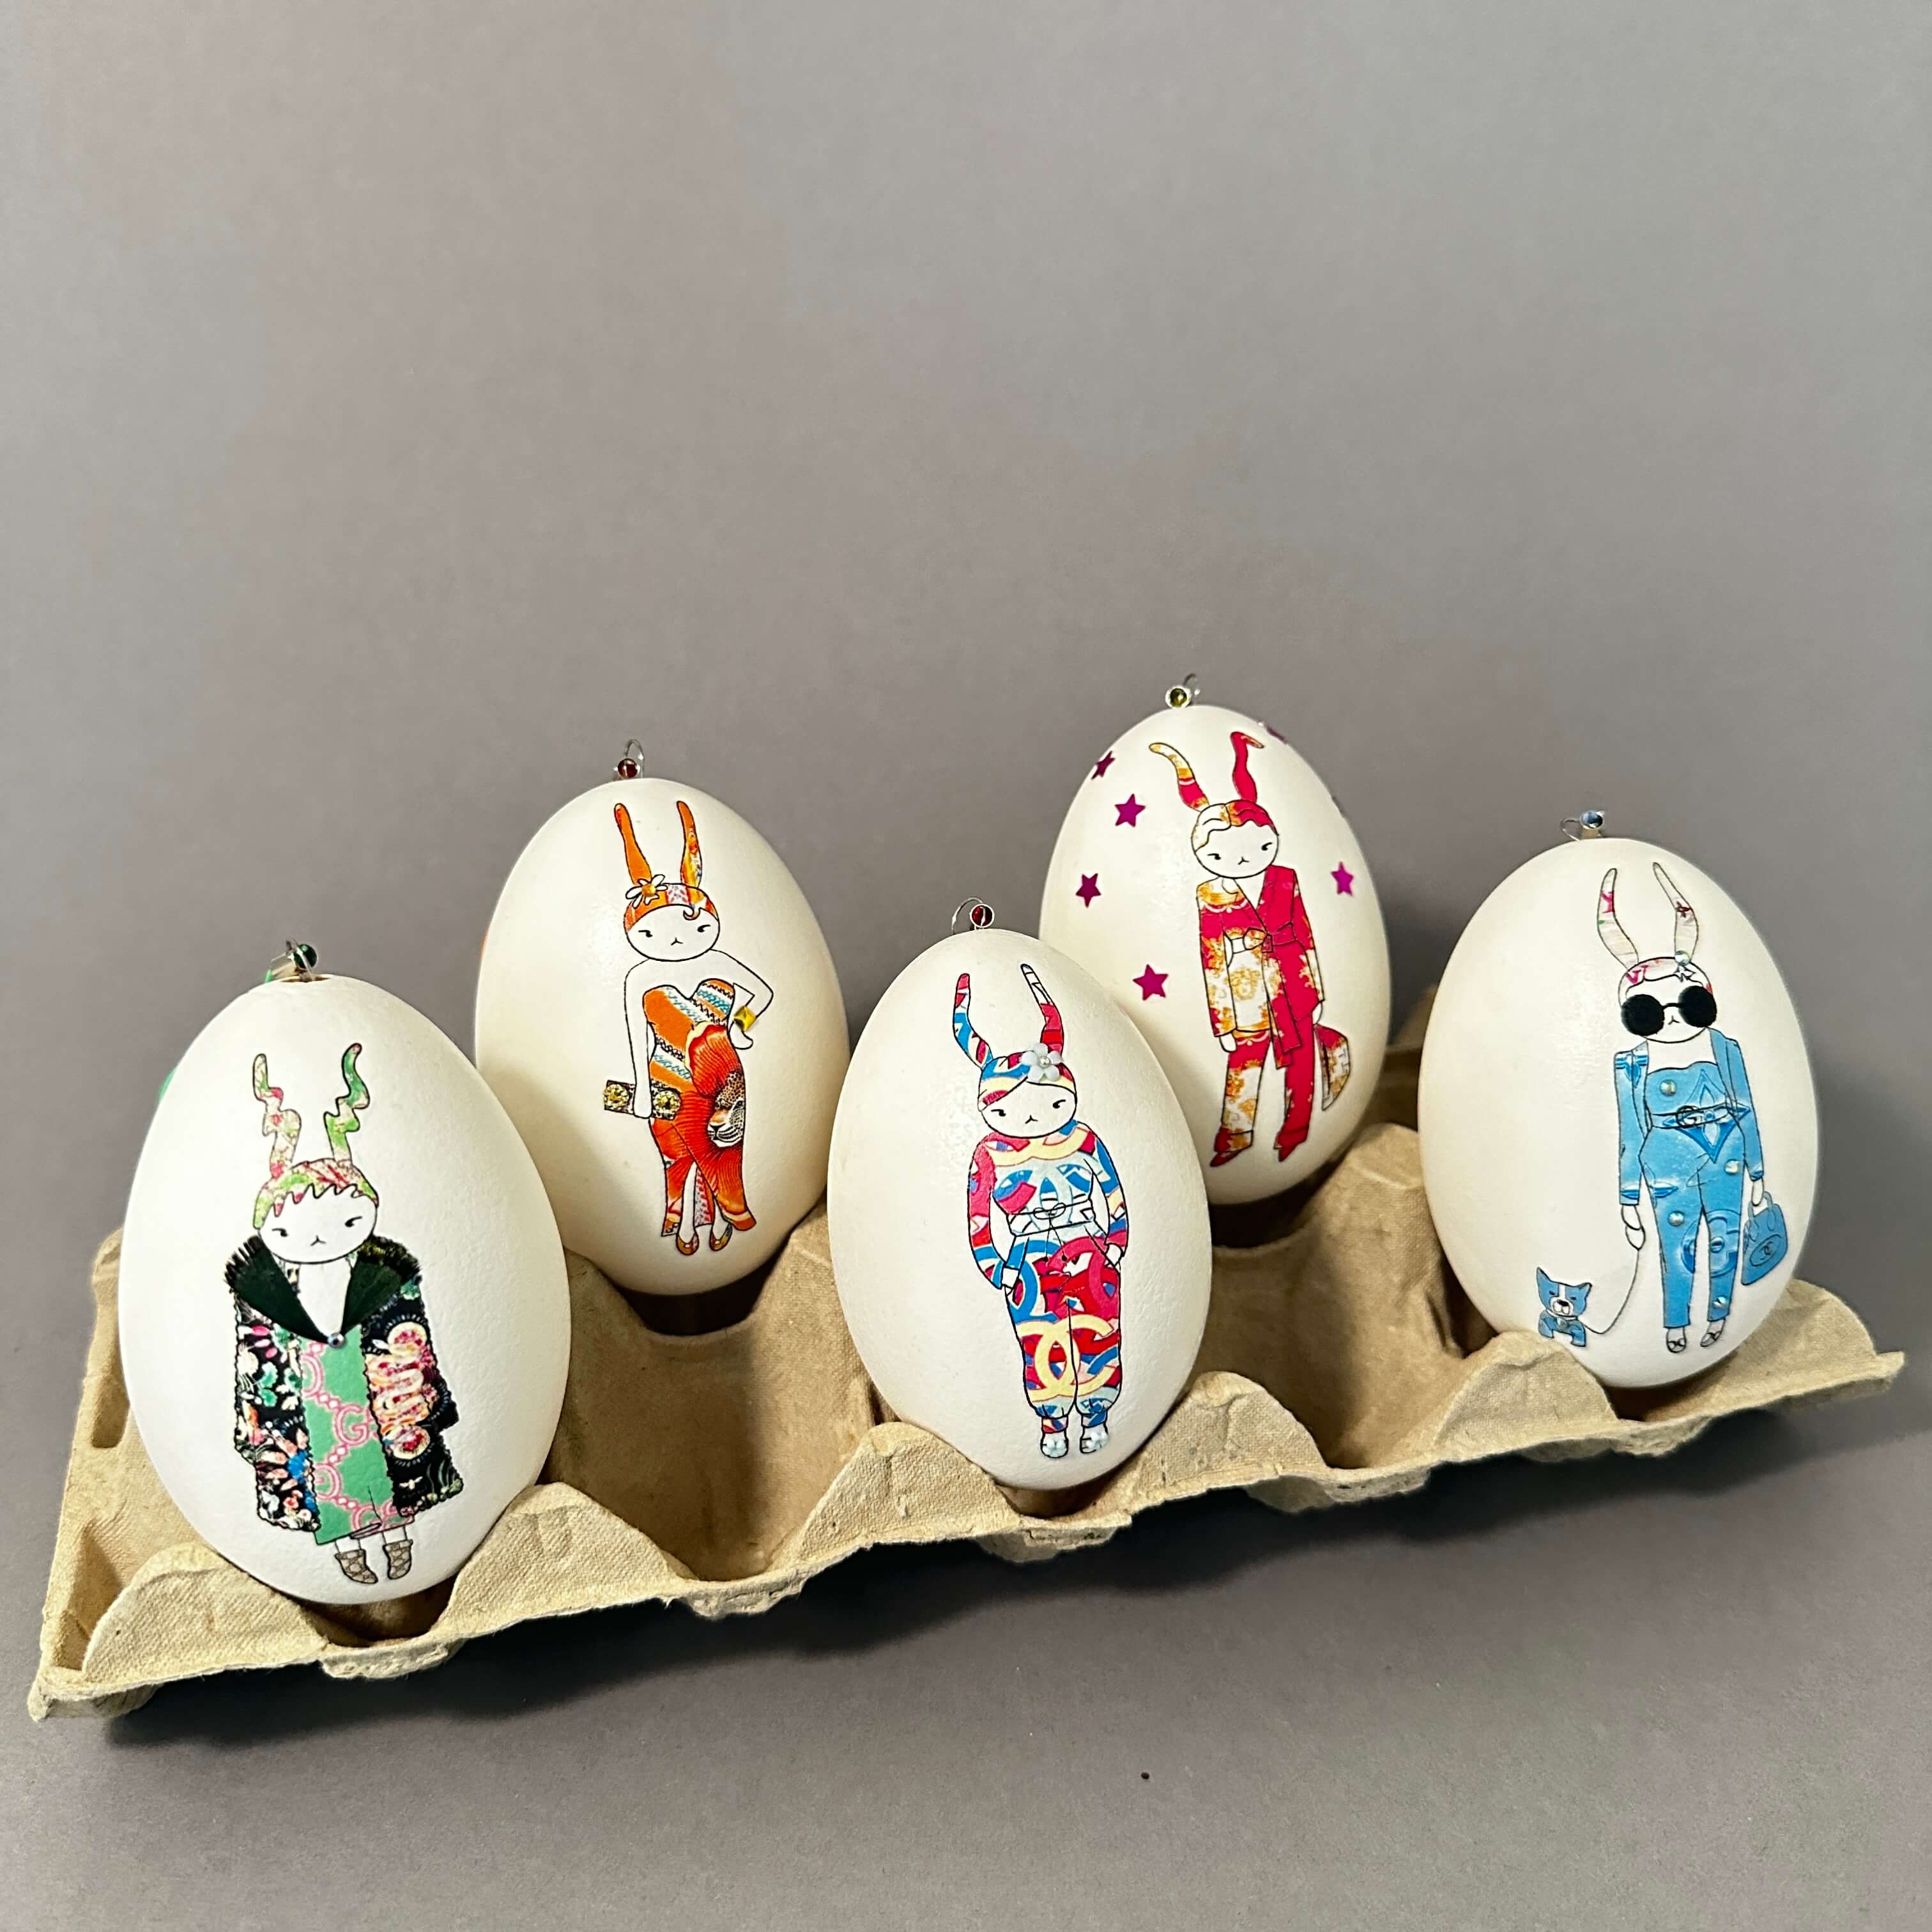 Ostereier-Deko: Echte Kunst trifft auf Eier – ei-nzigartig